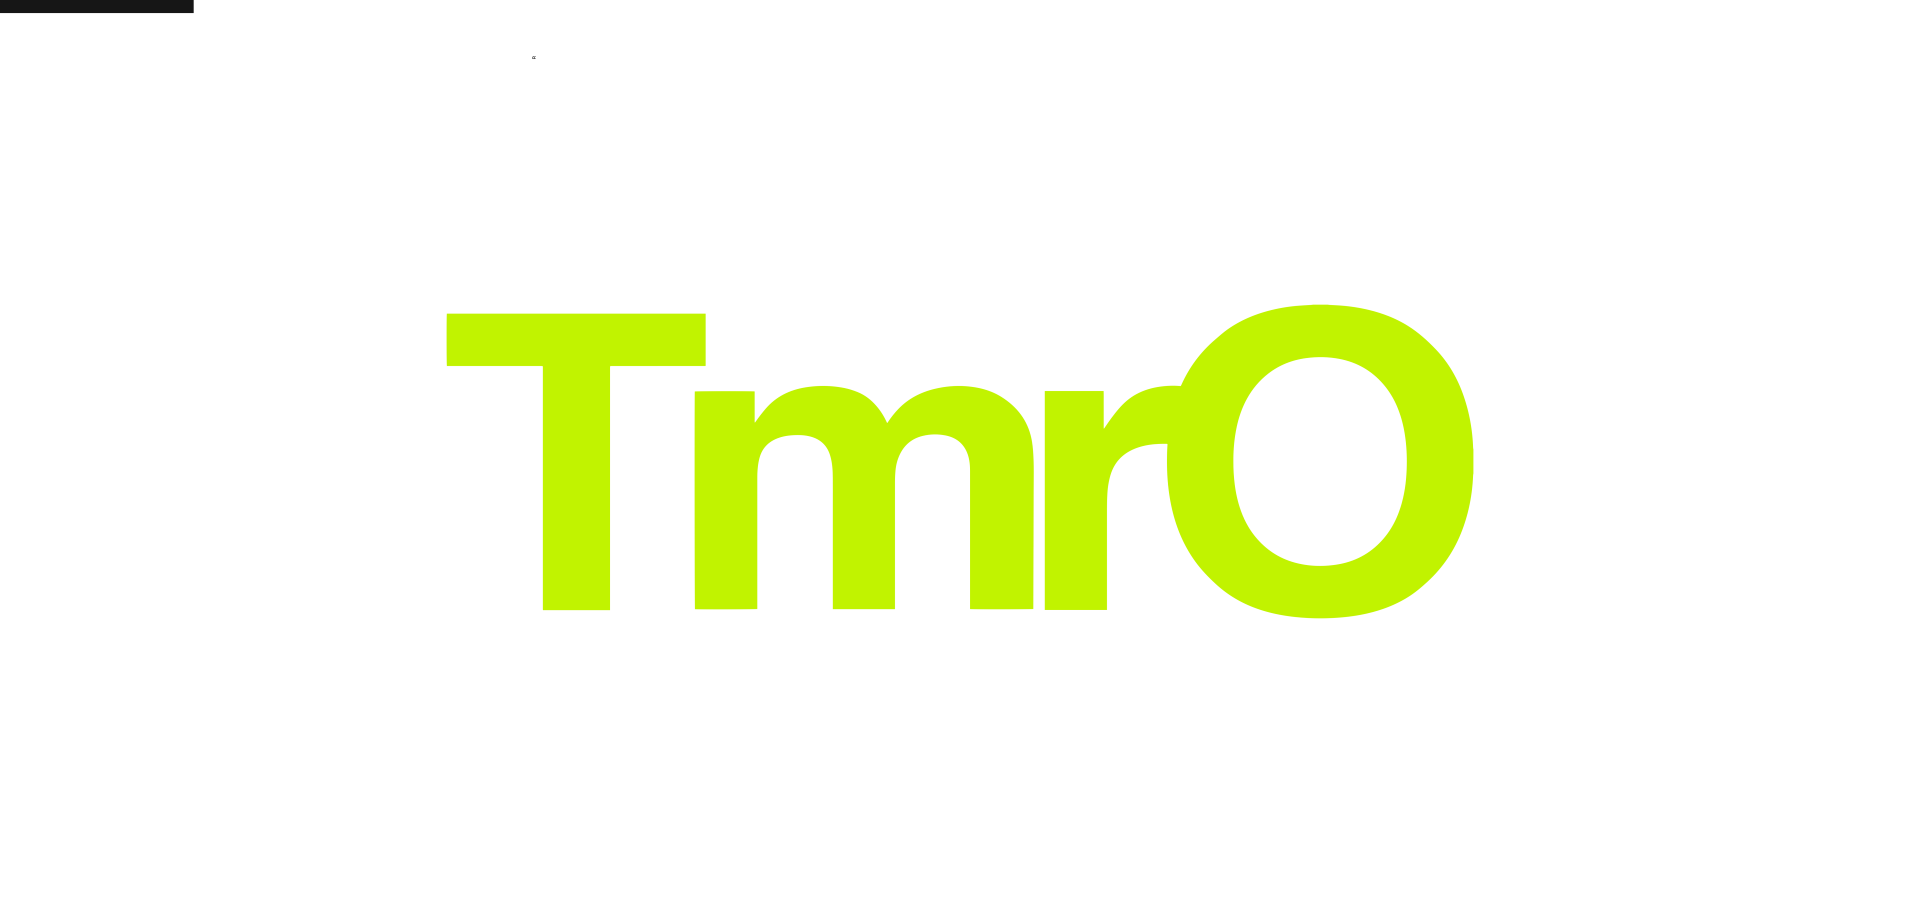 TmrO App